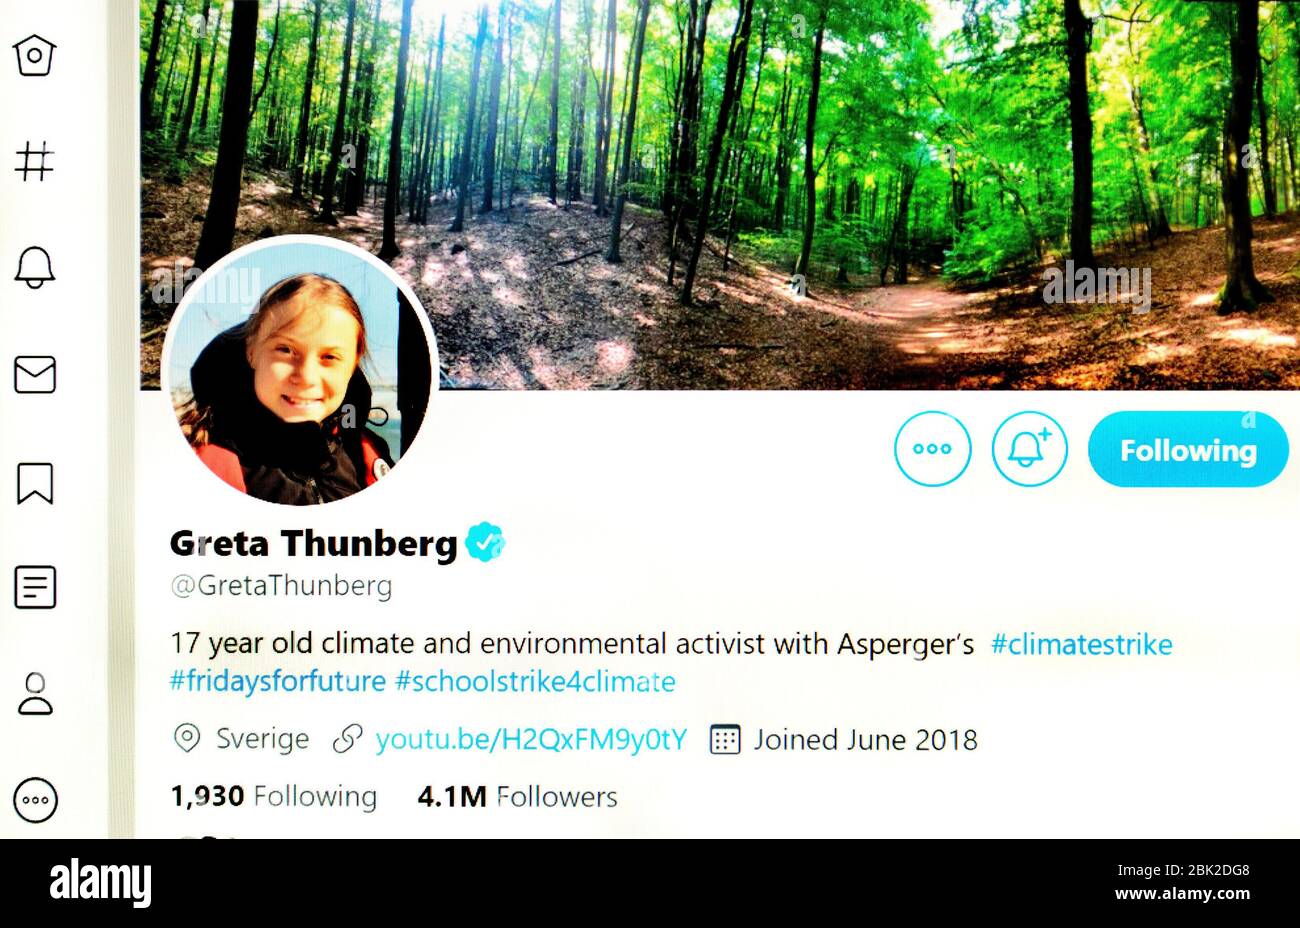 Twitter (mayo 2020) : Greta Thunberg - activista ambiental y climático de 17 años Foto de stock